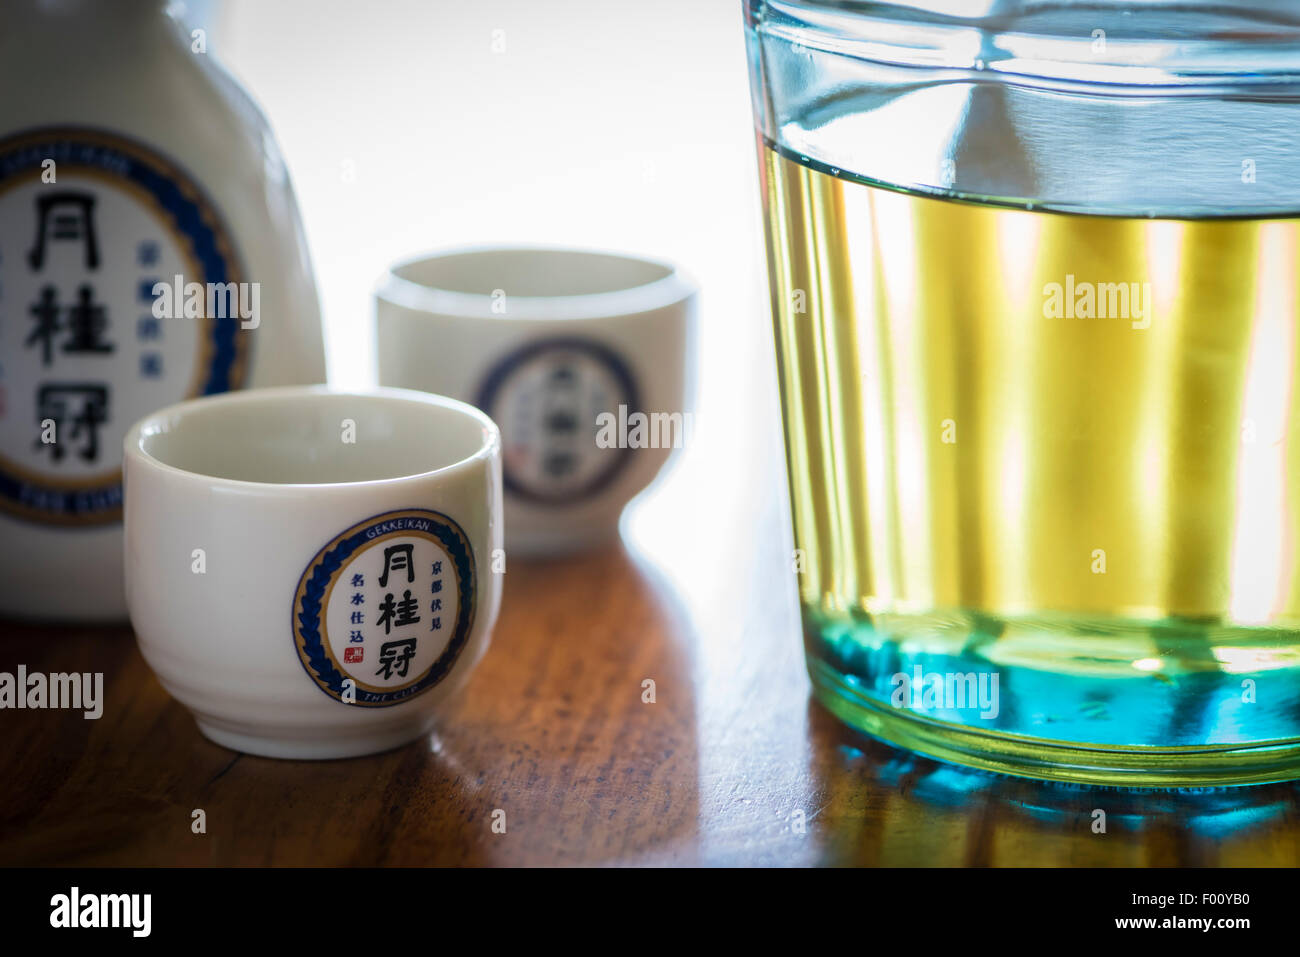 Una botella de licor de Sake Japonés, fabricada por la fábrica de Sake Kyoto Gekkeikan Sake tazas de cerámica, con el logotipo de la compañía. Foto de stock